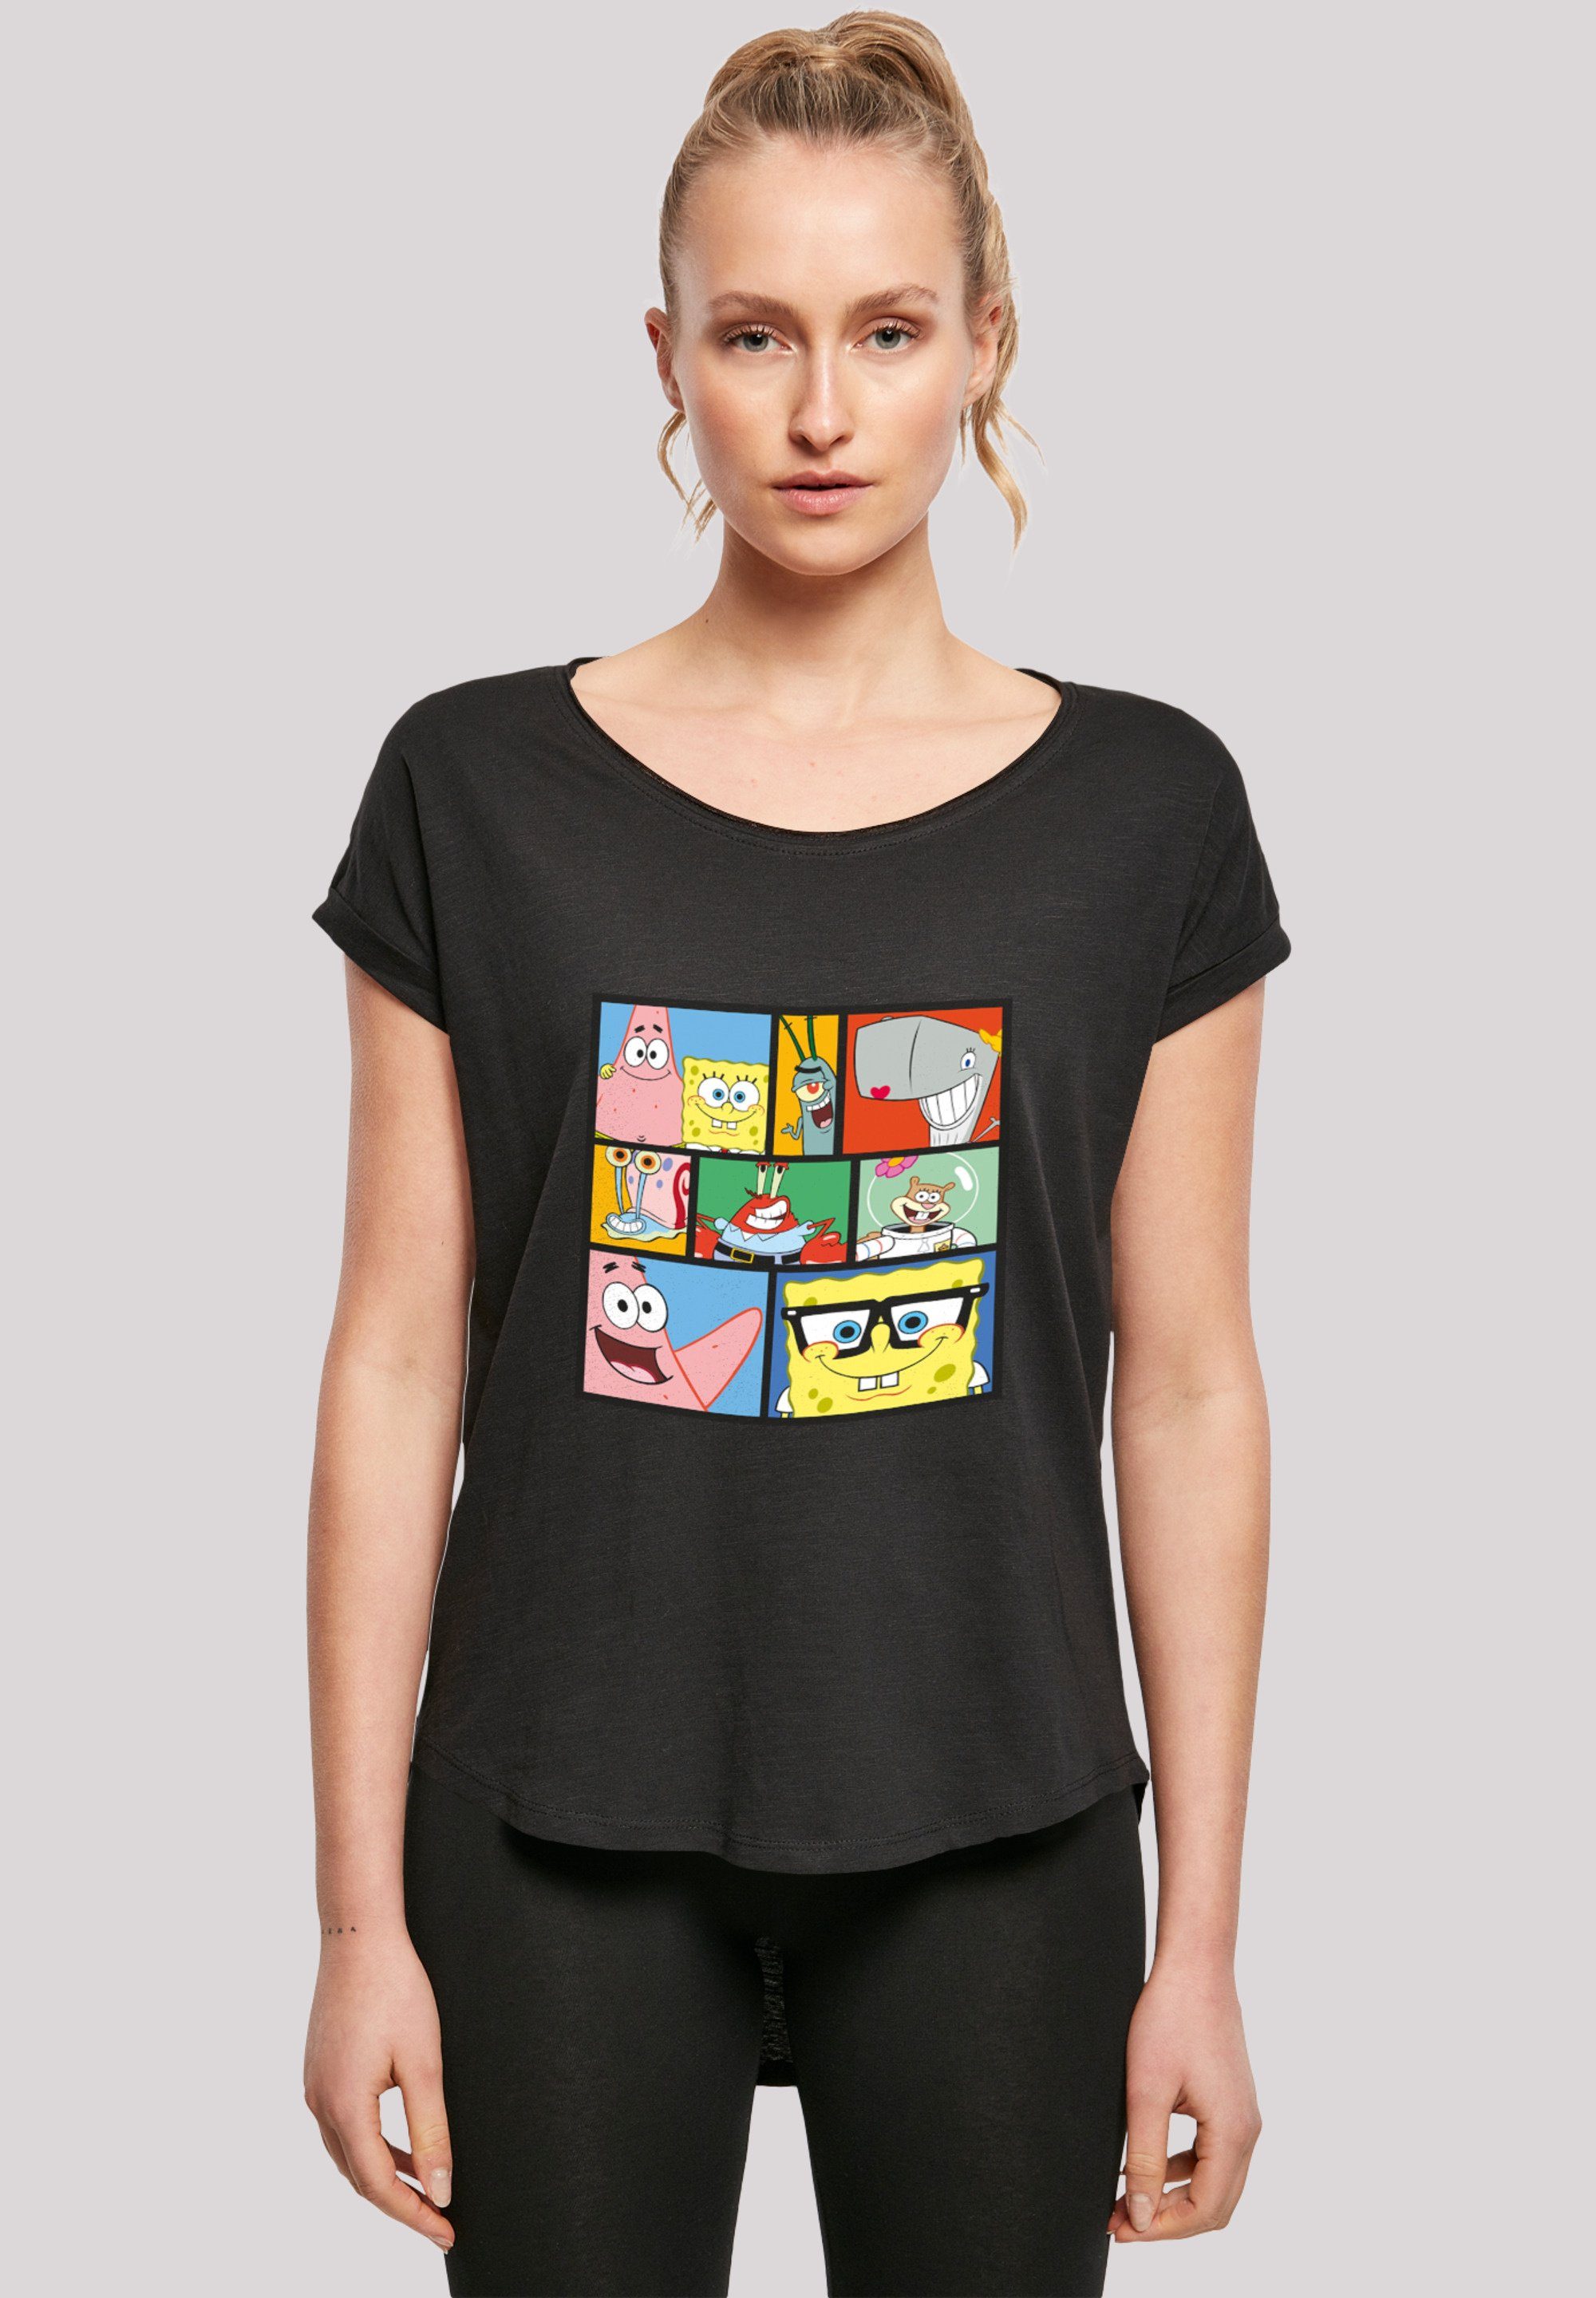 F4NT4STIC T-Shirt schwarz Print Schwammkopf Collage' 'Spongebob